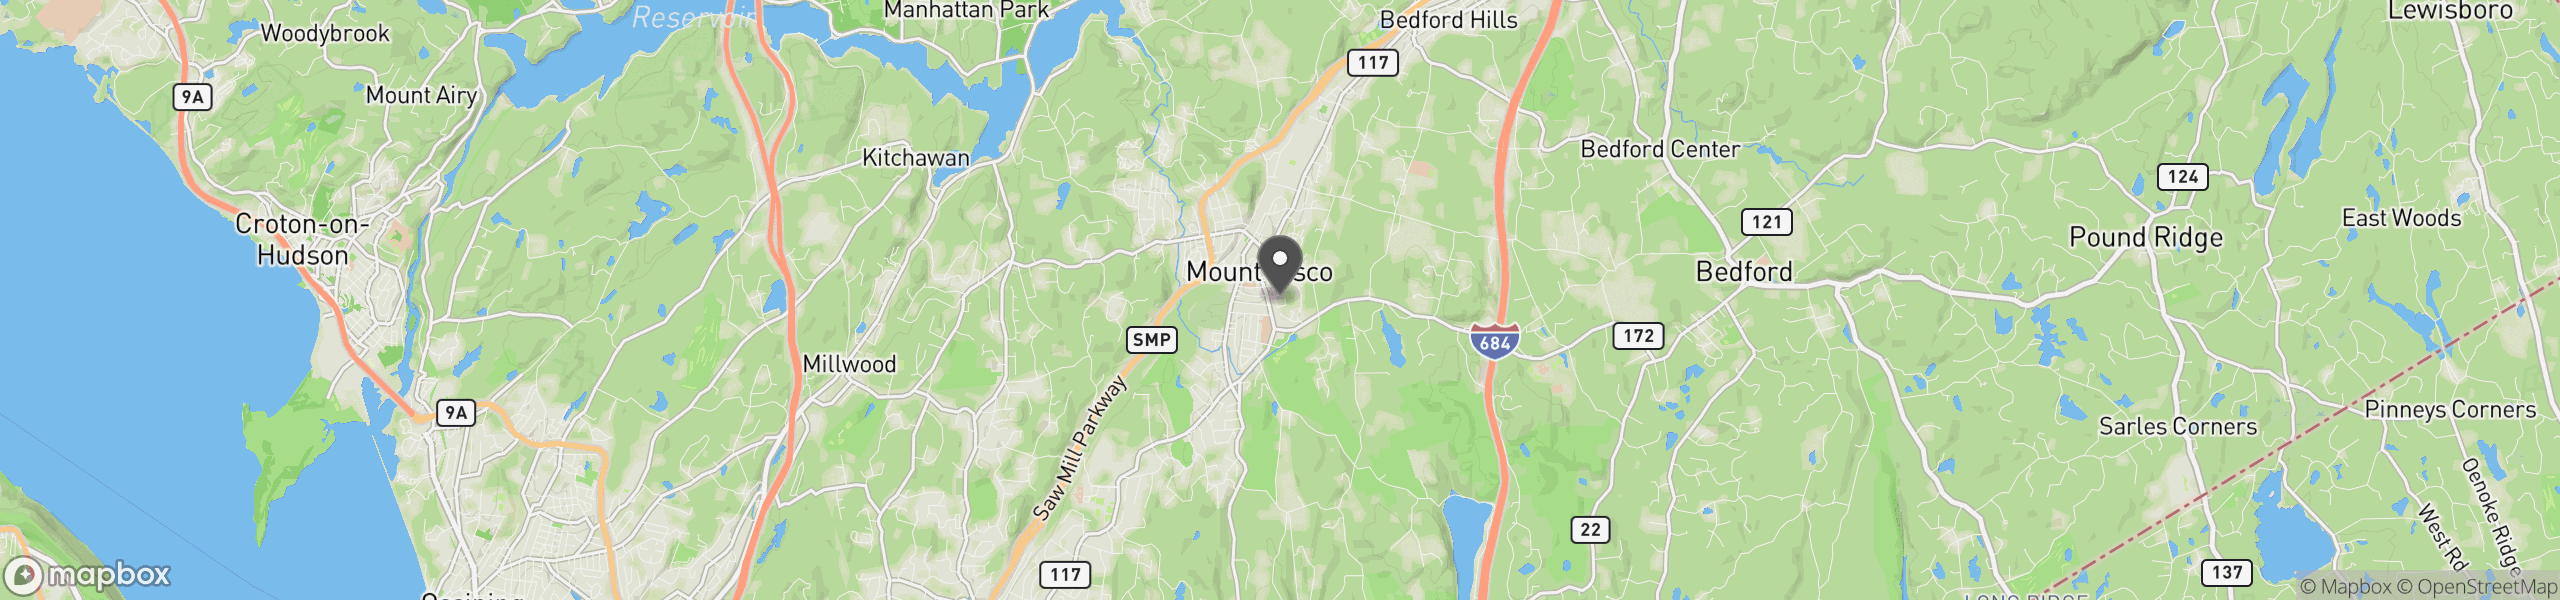 Mount Kisco, NY 10549